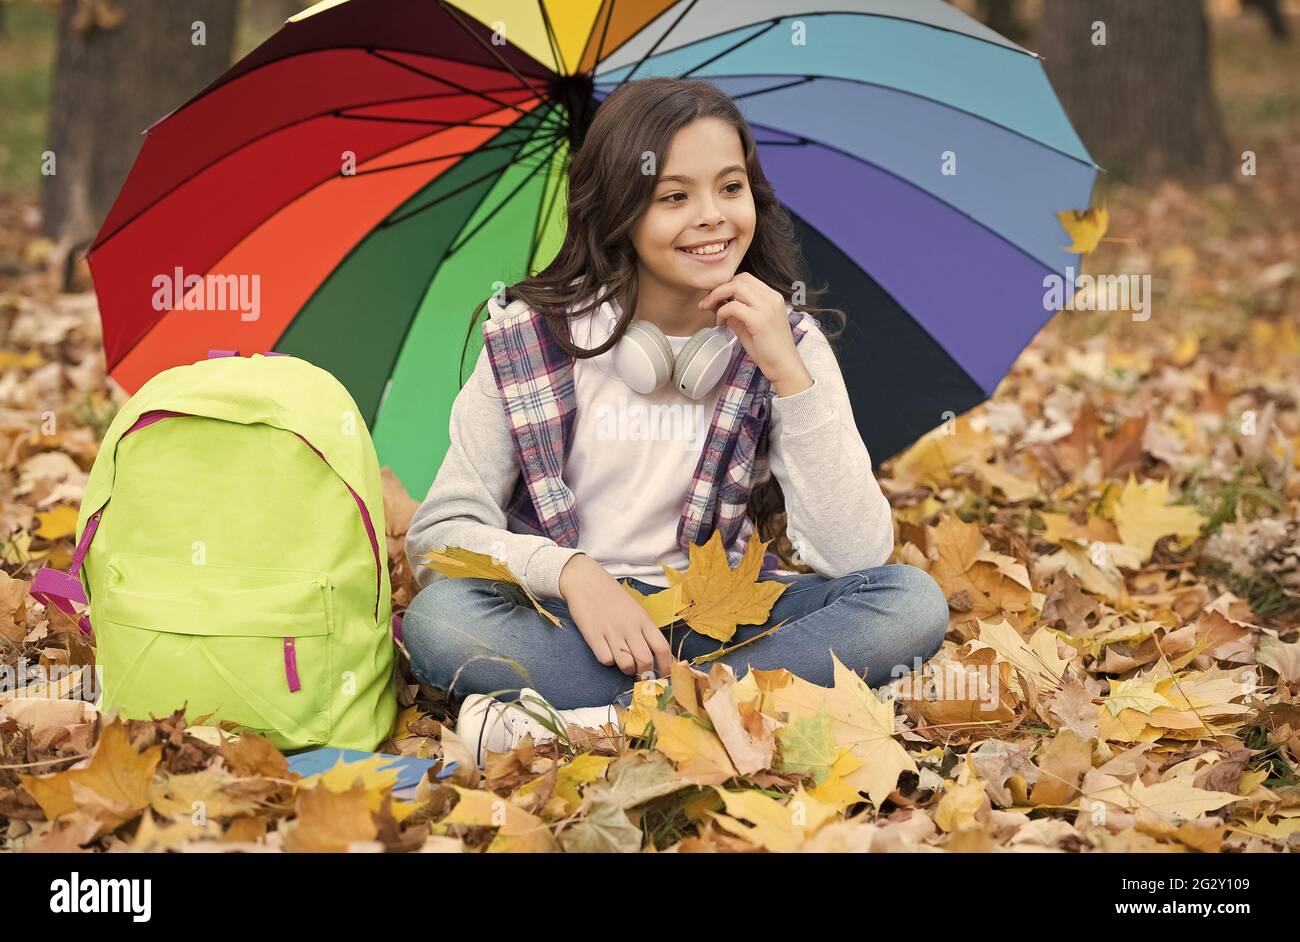 Schnapper Erinnerungen. Genießen Sie warmes saisonales Wetter. Happy Kid  sitzt unter bunten Regenschirm. Mädchen mit Rucksack unter Regenschutz.  Kind entspannen Stockfotografie - Alamy